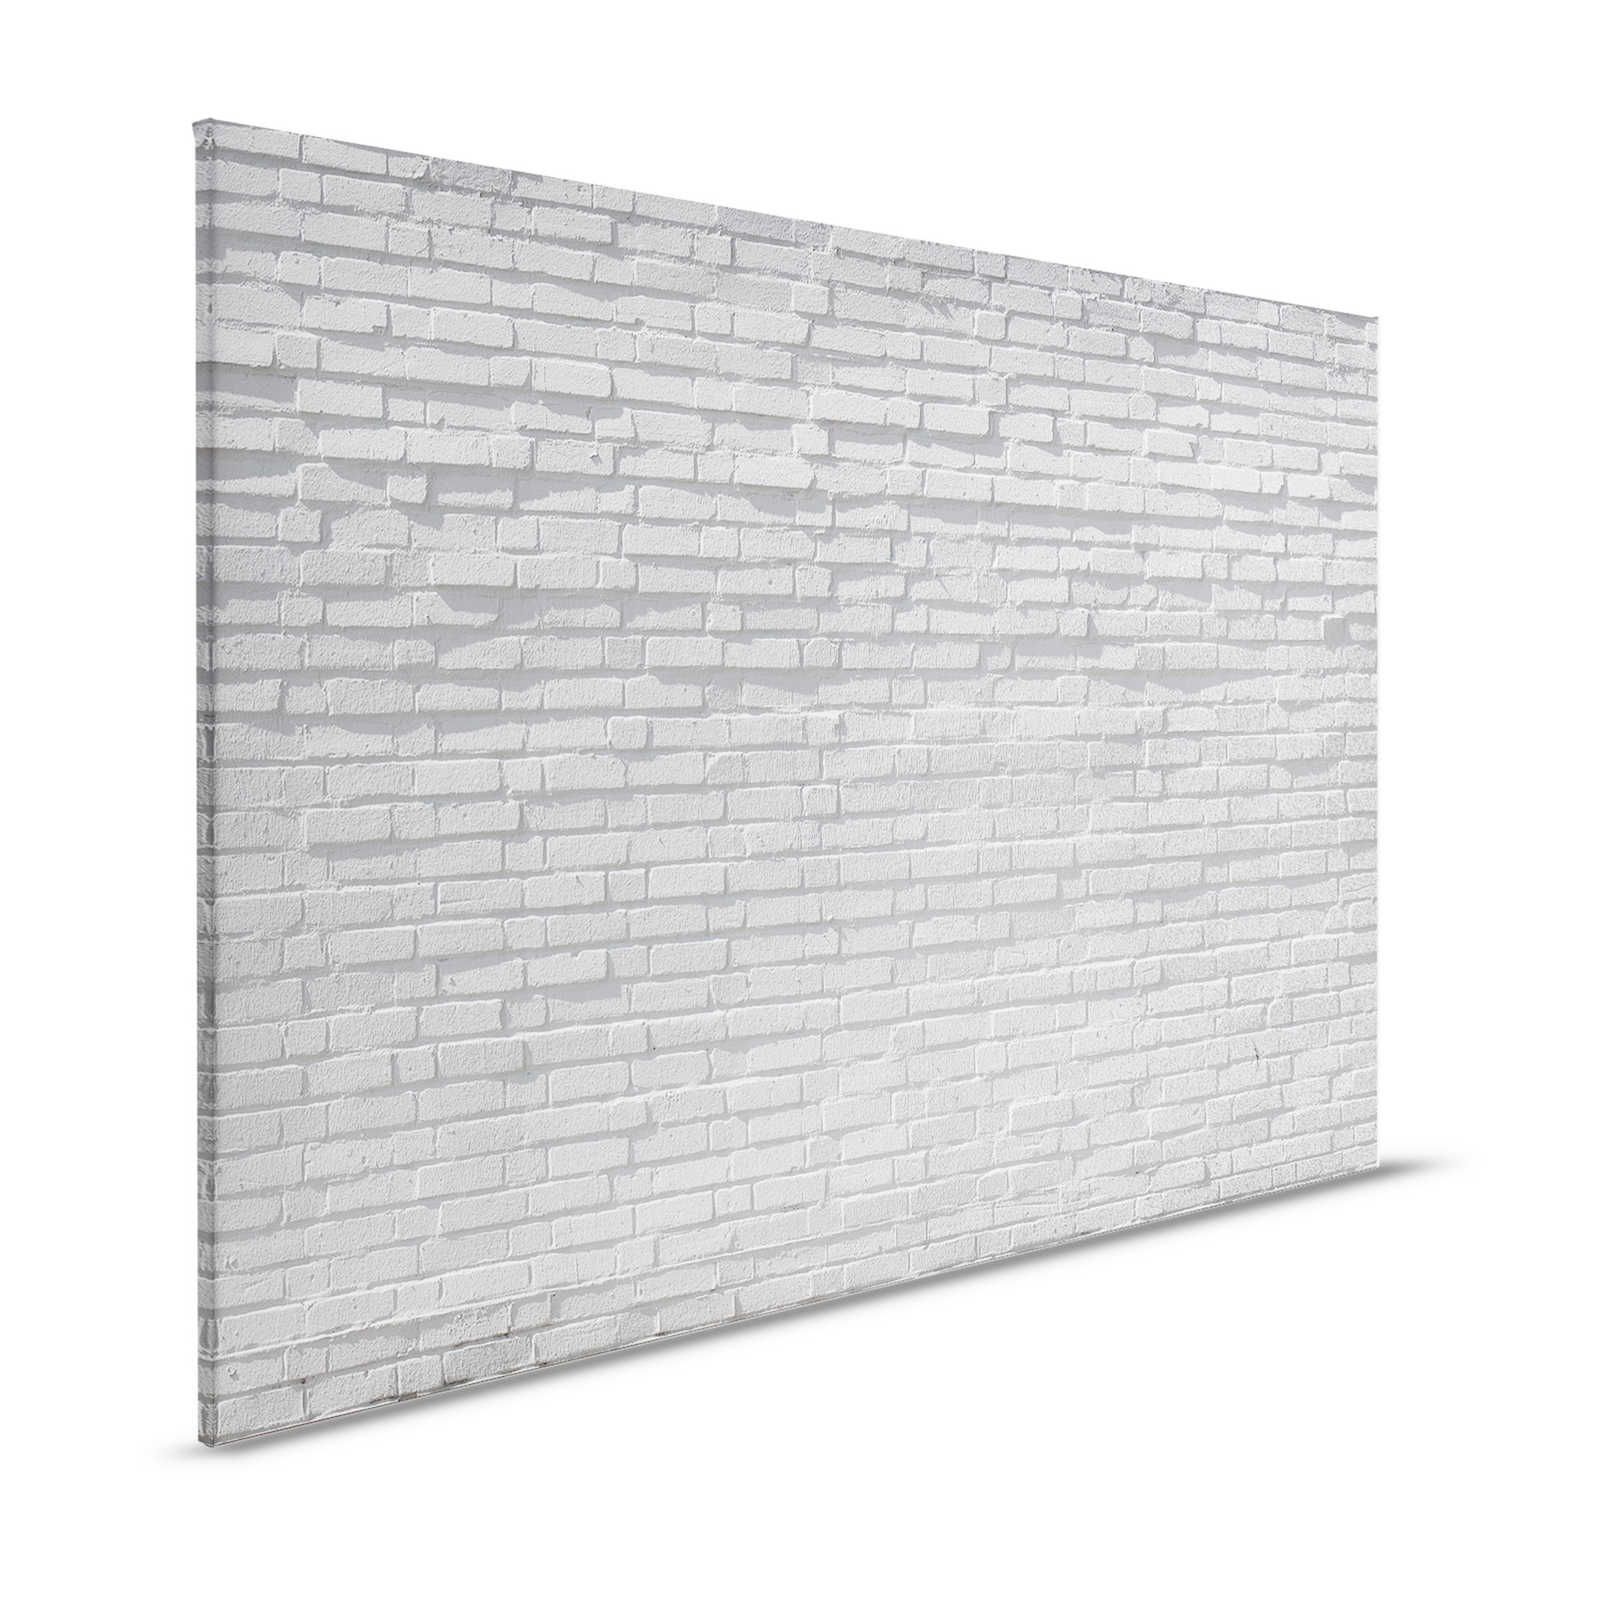 Lienzo pared de ladrillo gris en 3D - 1,20 m x 0,80 m
